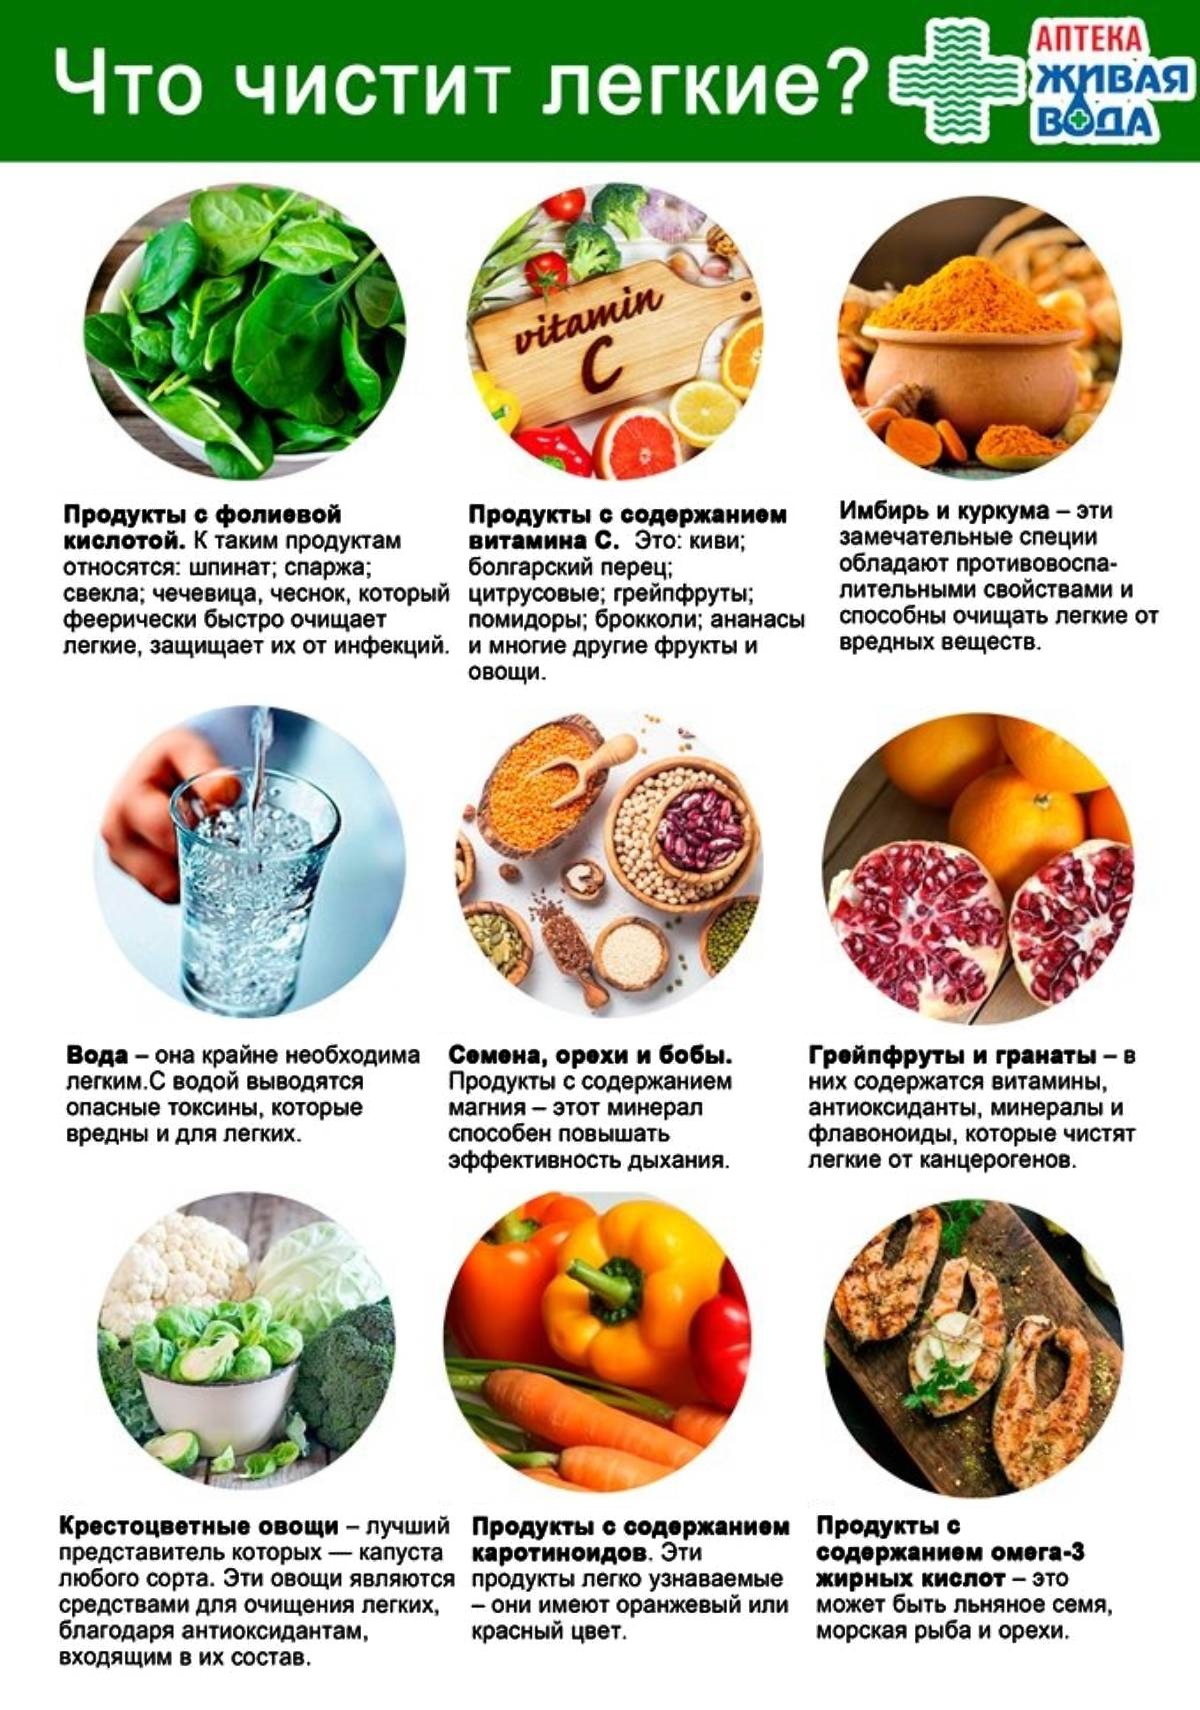 Какие полезные продукты нужно есть. Пища, полезная для легких. Продукты полезные для легких. Полезные продукты питания. Полезные продукты для легких при пневмонии.